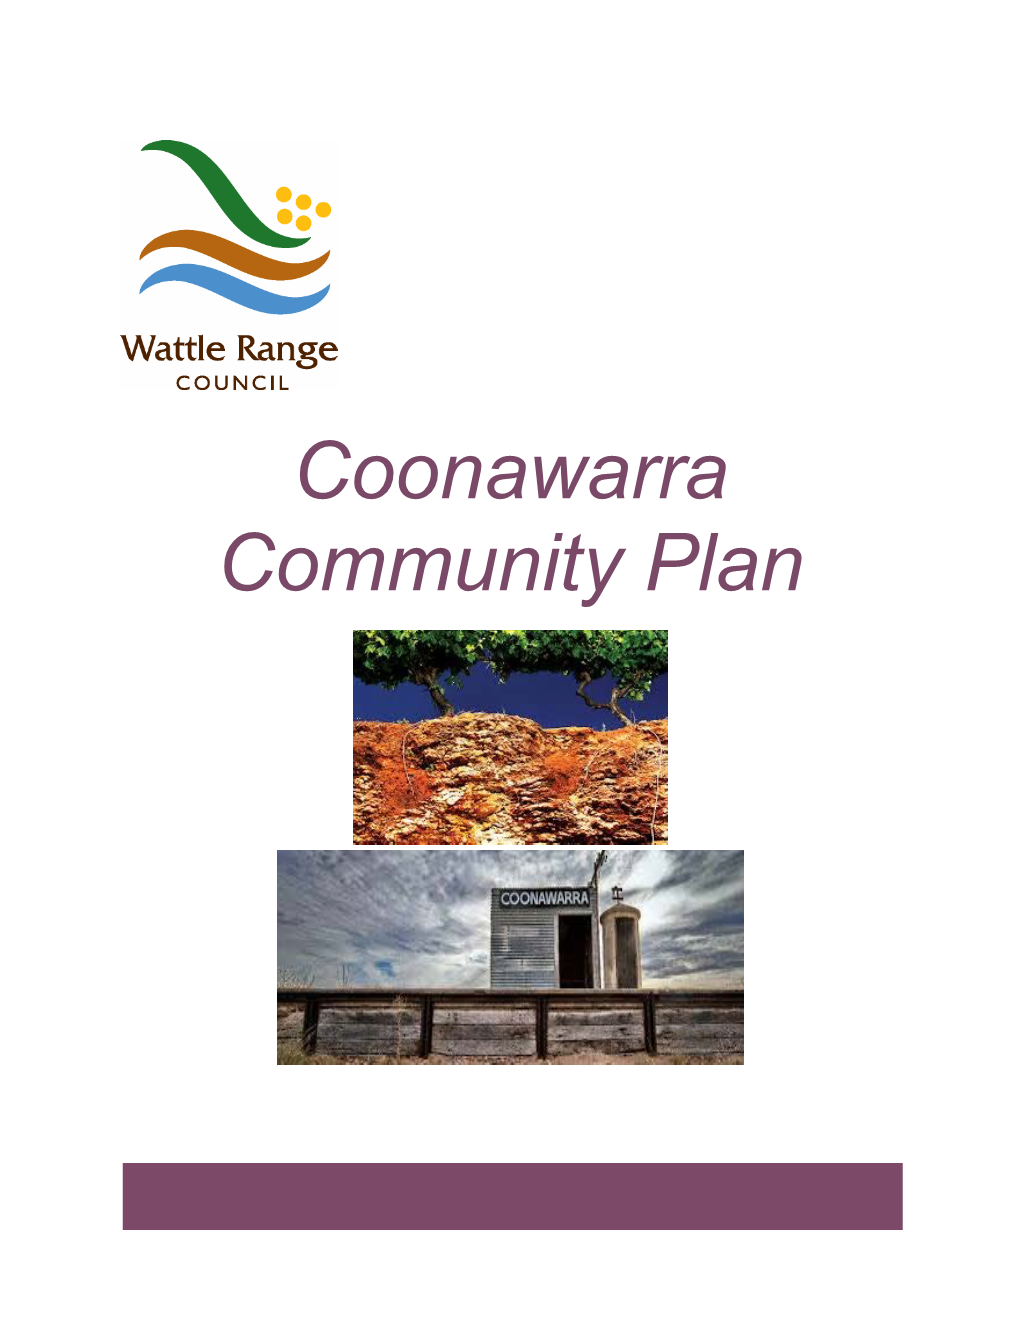 Coonawarra Community Plan